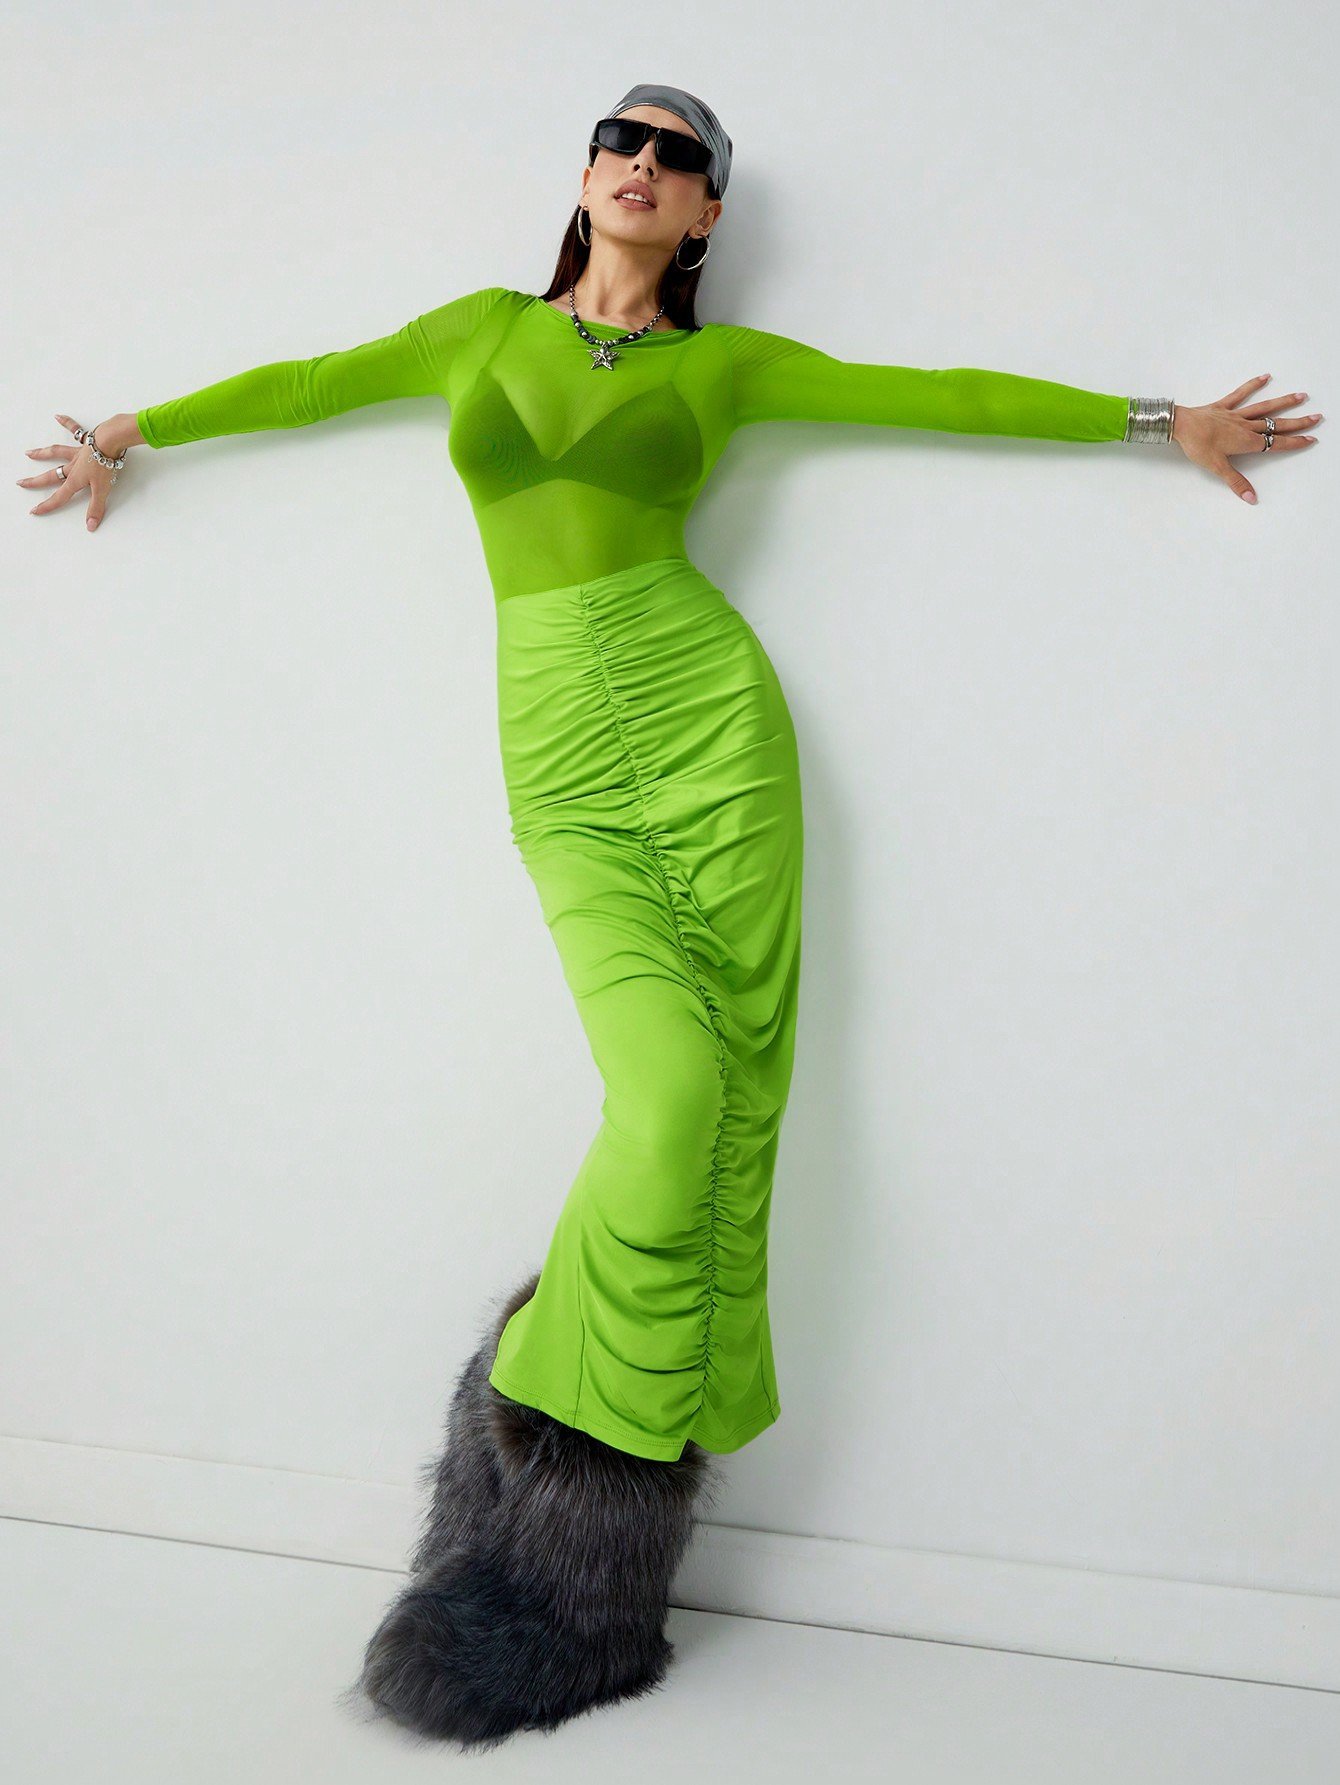 SHEIN Neu 女性用グリーンラウンドネック長袖ドレス、シアーメッシュスパイスとプリーツスリムフィットデザインを使ったデザイン。